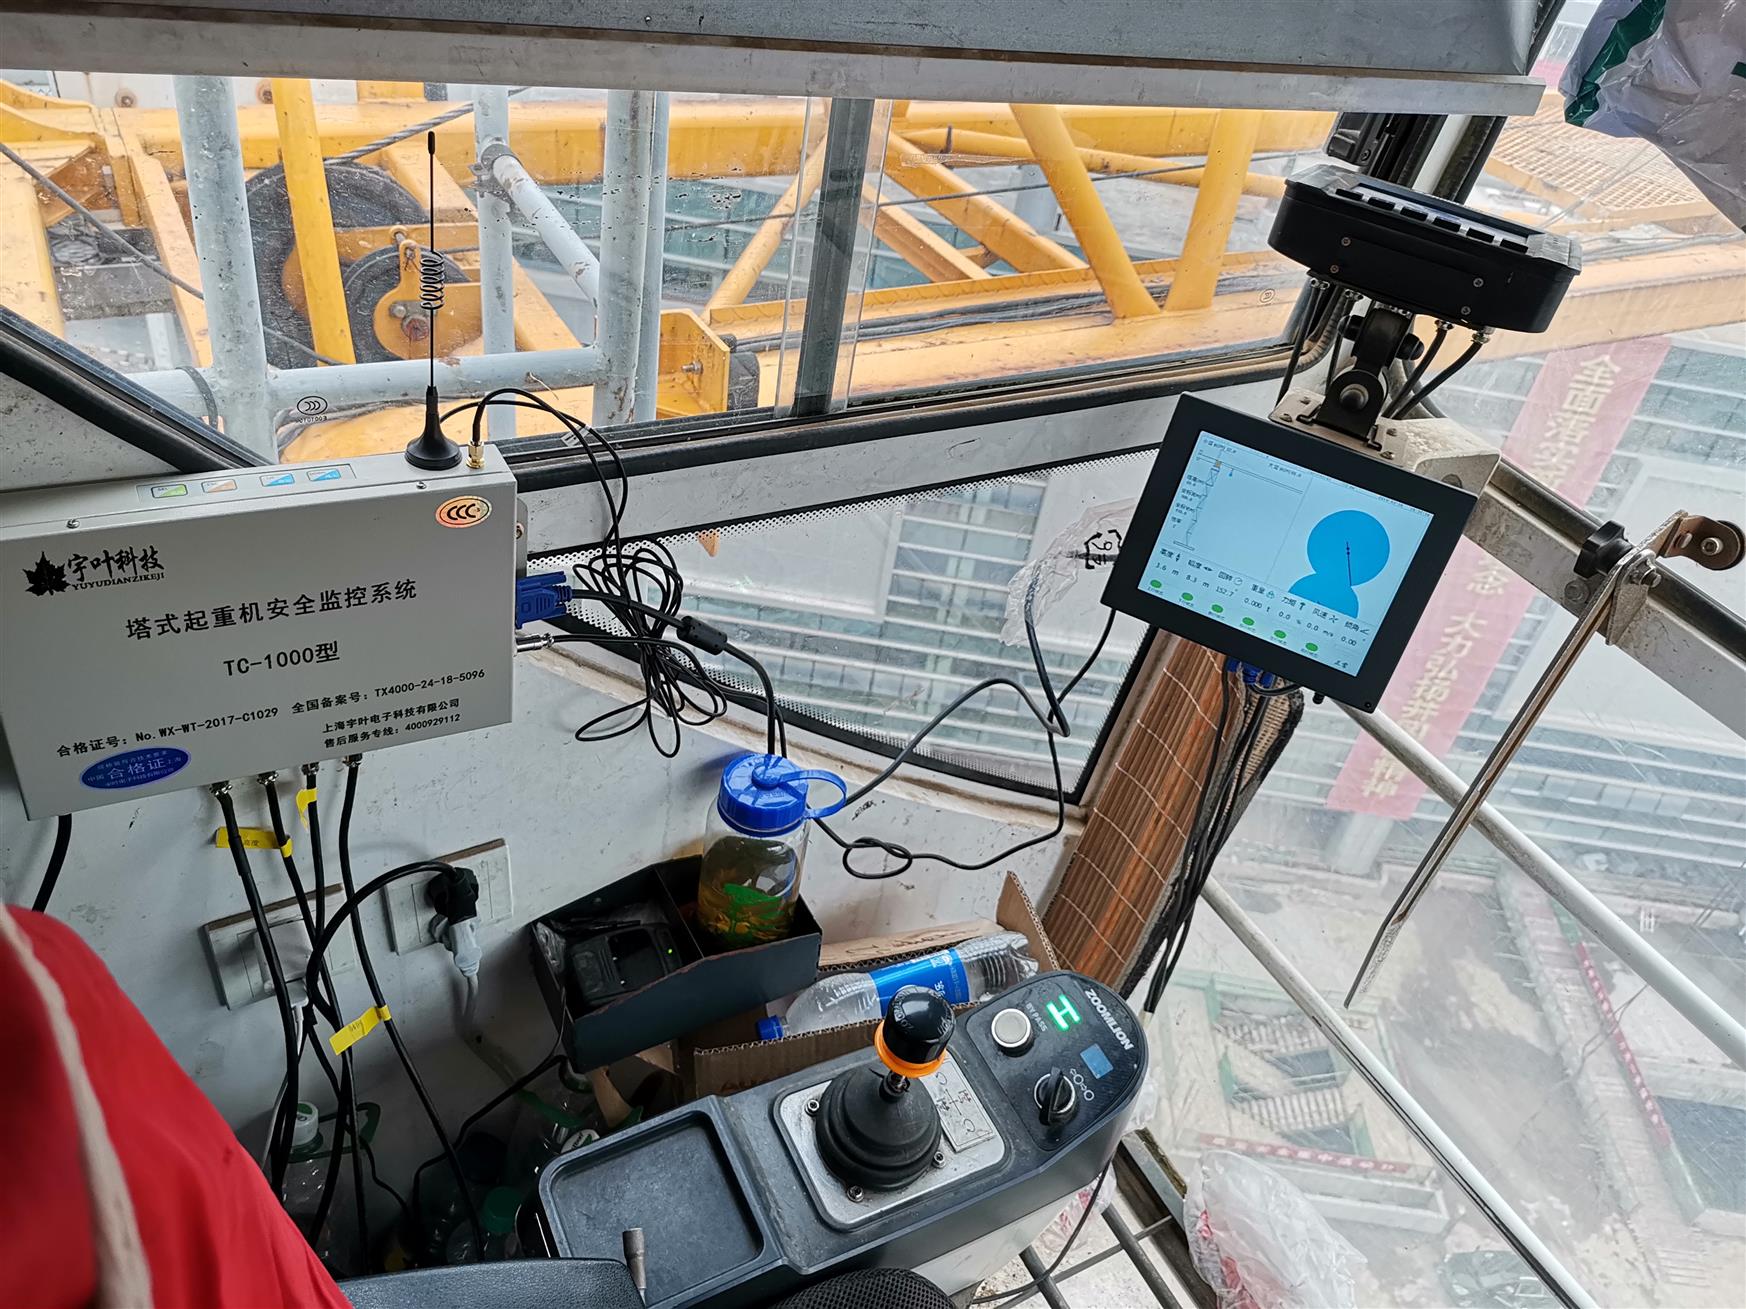 工作效率高 环保施工 回转塔机黑匣子 广州塔吊防碰撞系统厂家